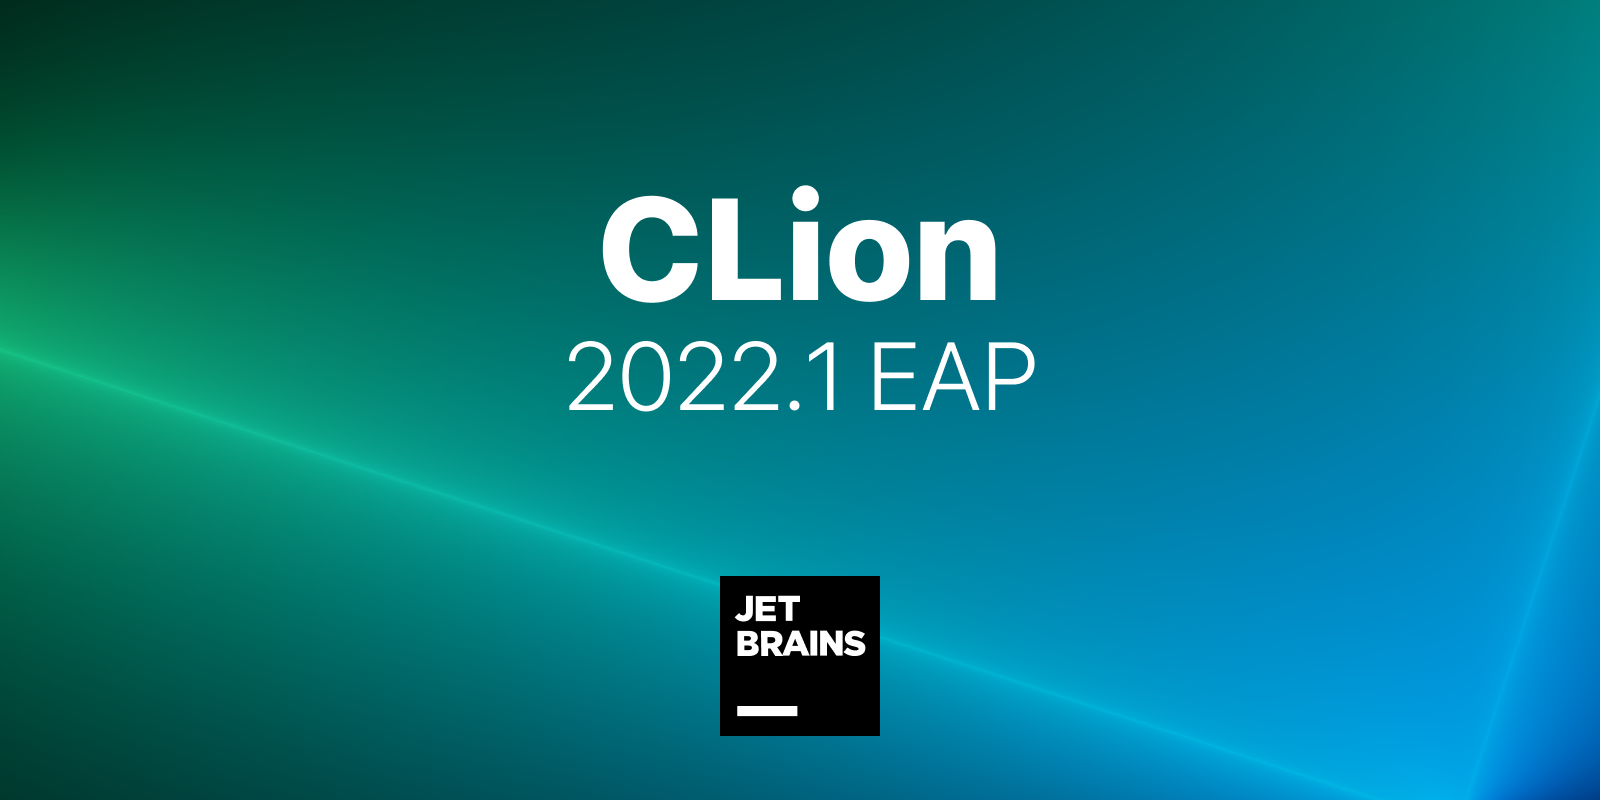 CLion 2022.1 EAP